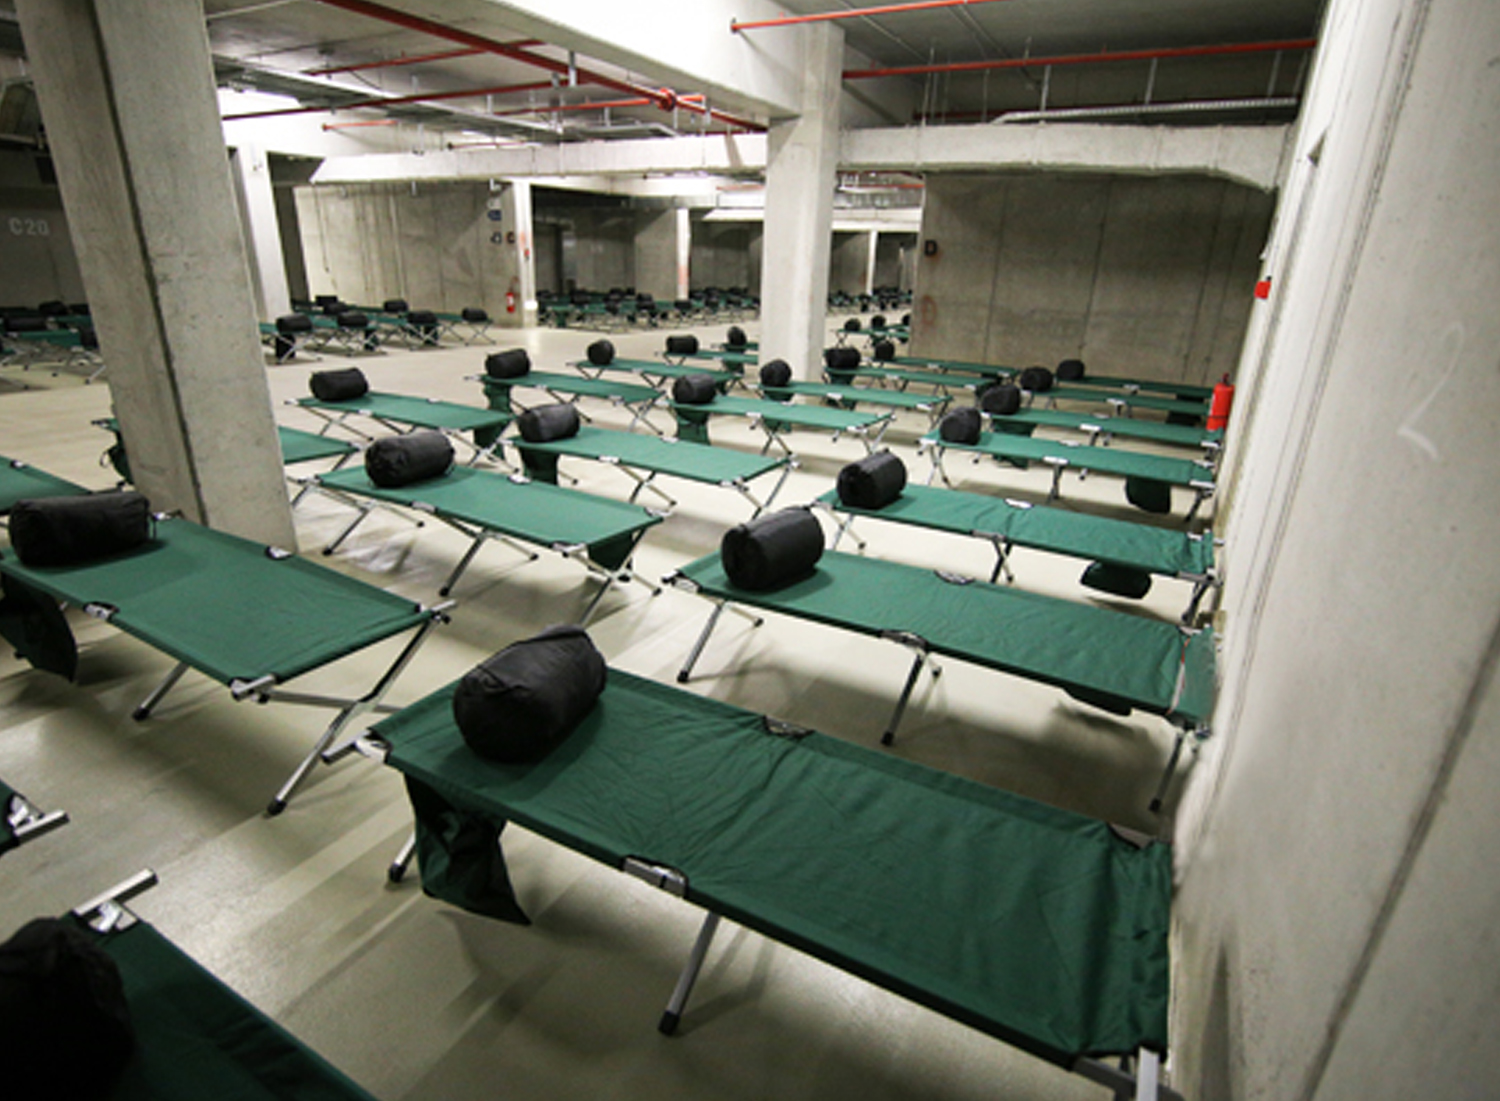 Grande salle avec cloison de béton où est disposer des lits de camps